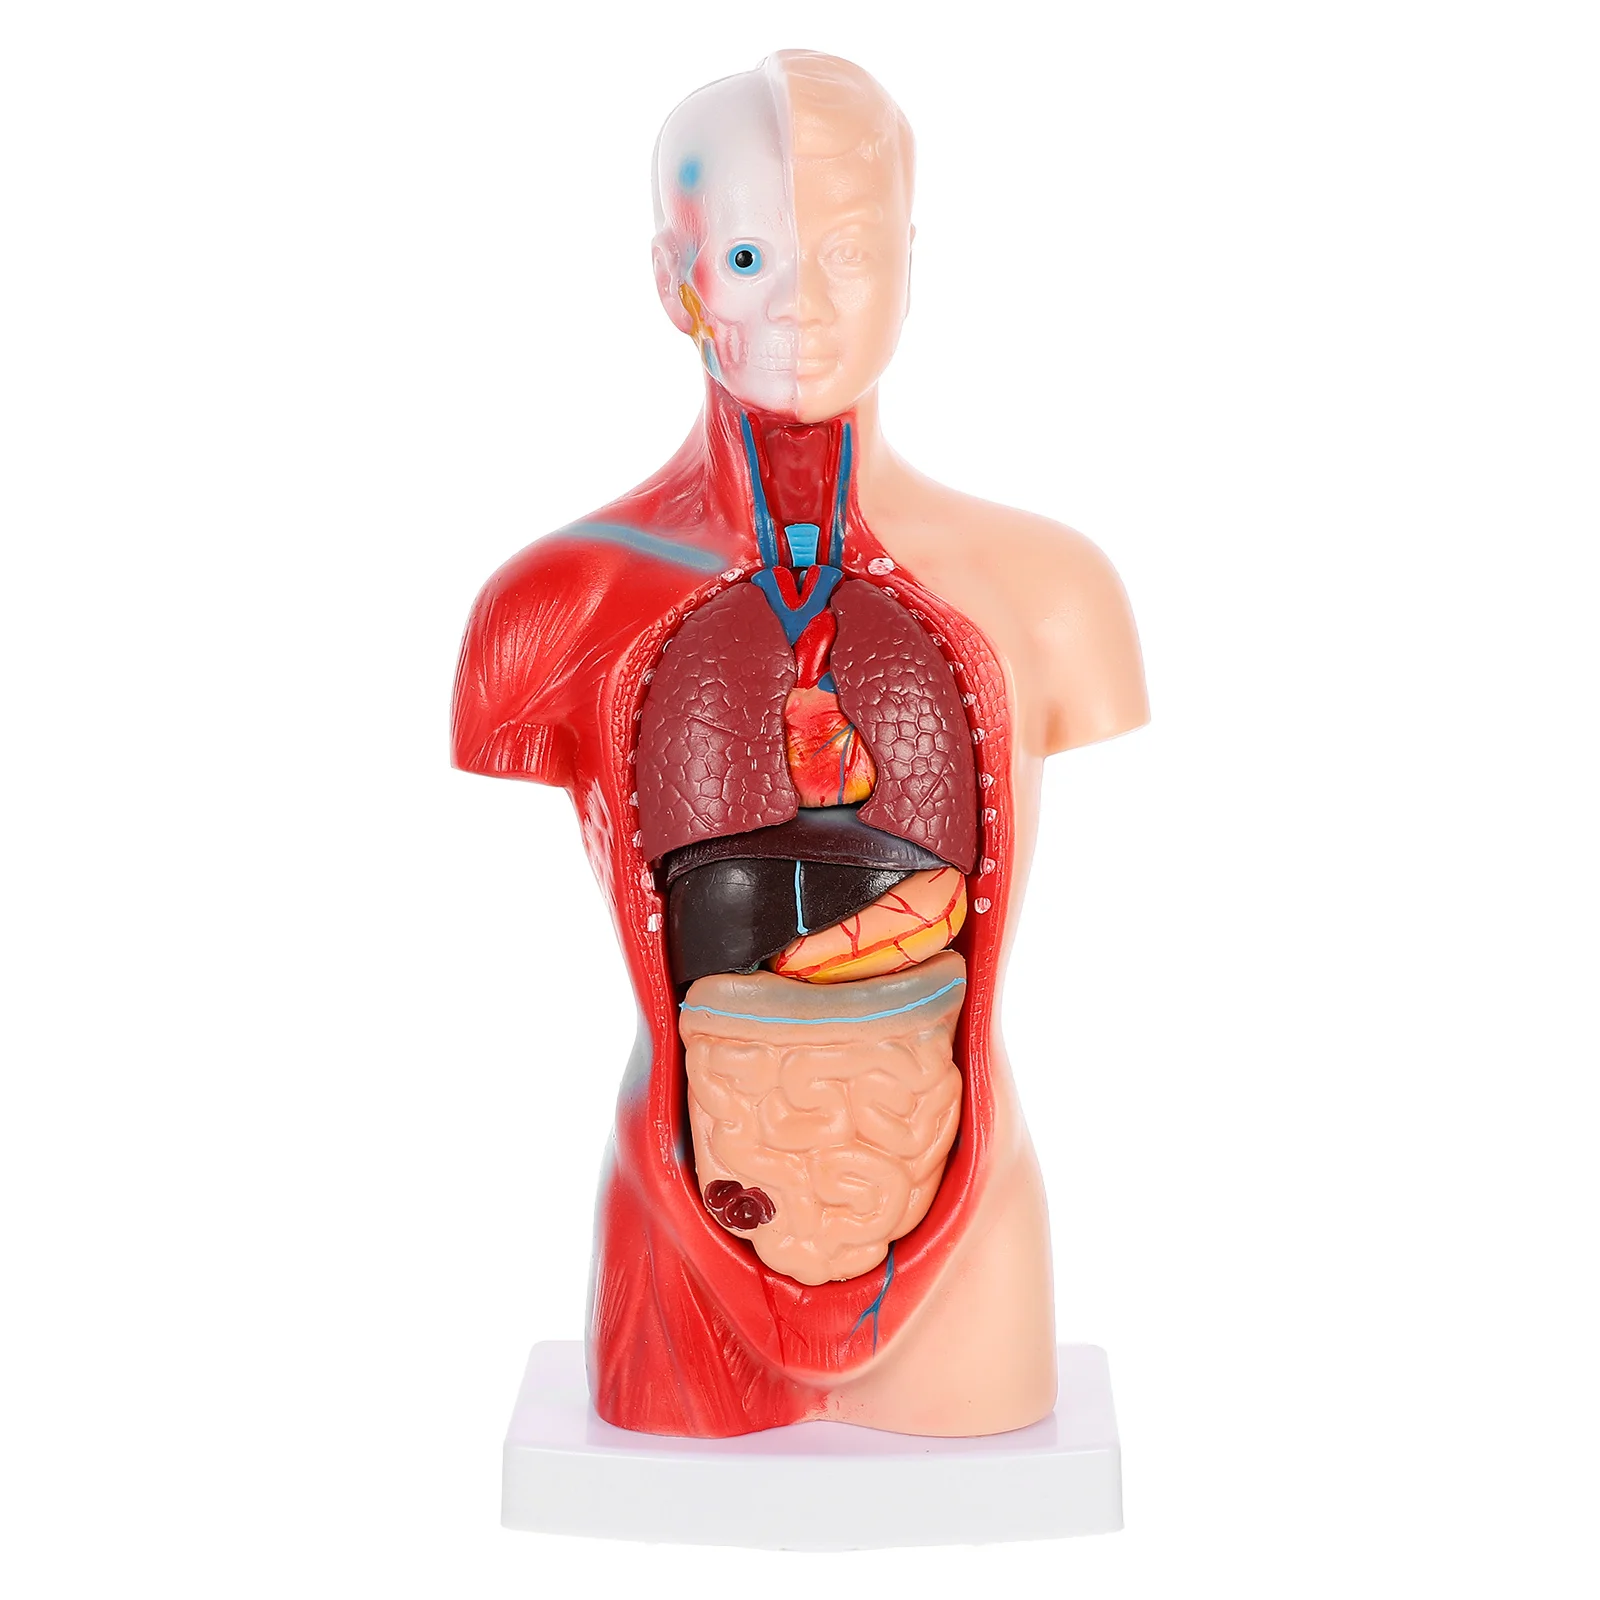 

Модель анатомии человека, манекен, фигурка внутренних органов, анатомическое медицинское обучающее тело из ПВХ